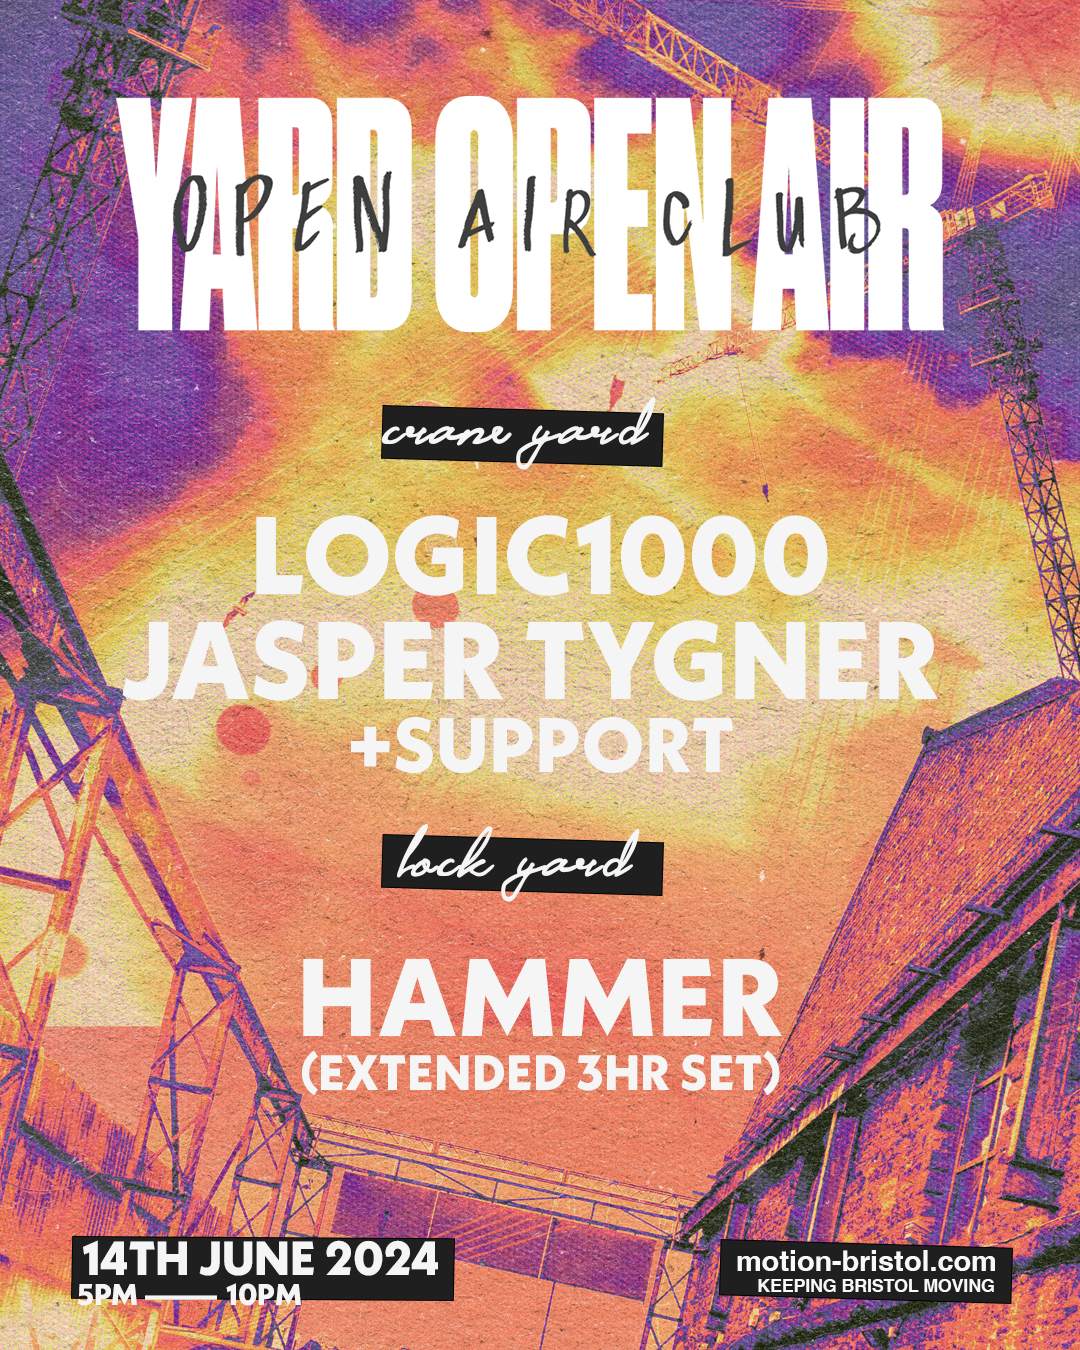 YARD Open Air Club: Logic1000, Jasper Tygner, Hammer - Página trasera